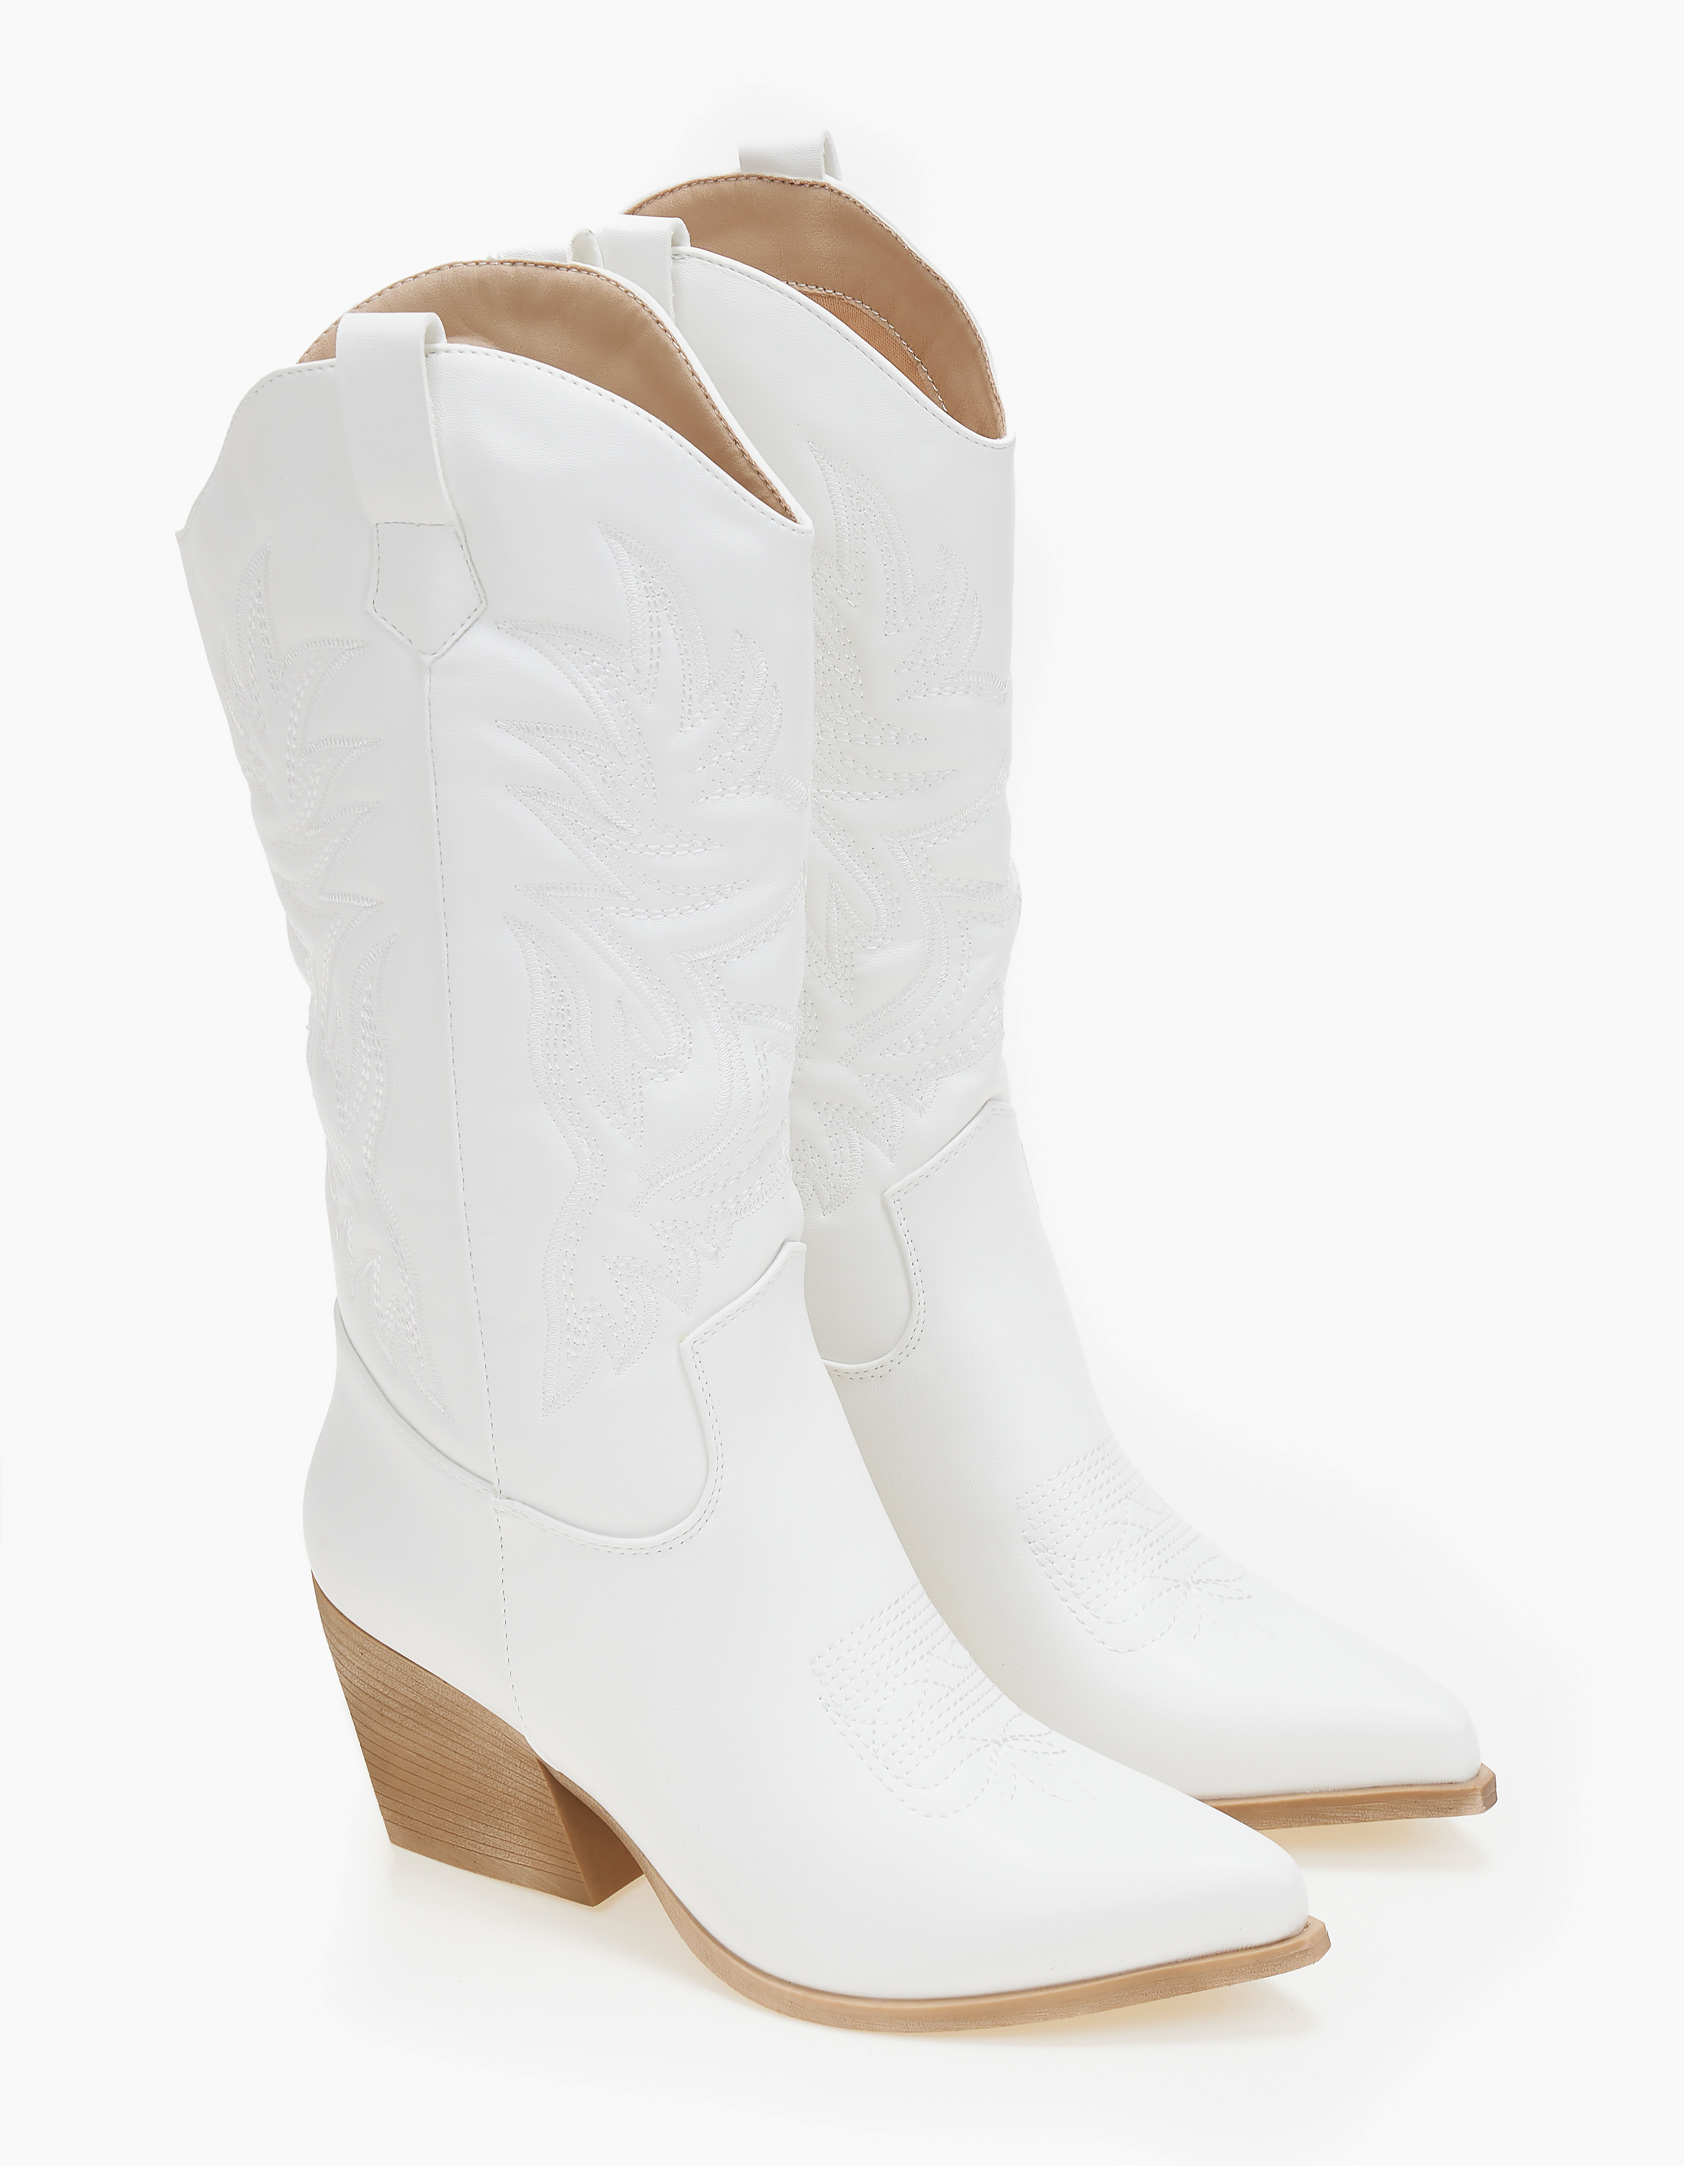 Cowboy μπότες με χοντρό τακούνι - Λευκό Παπούτσια > Western & Cowboy